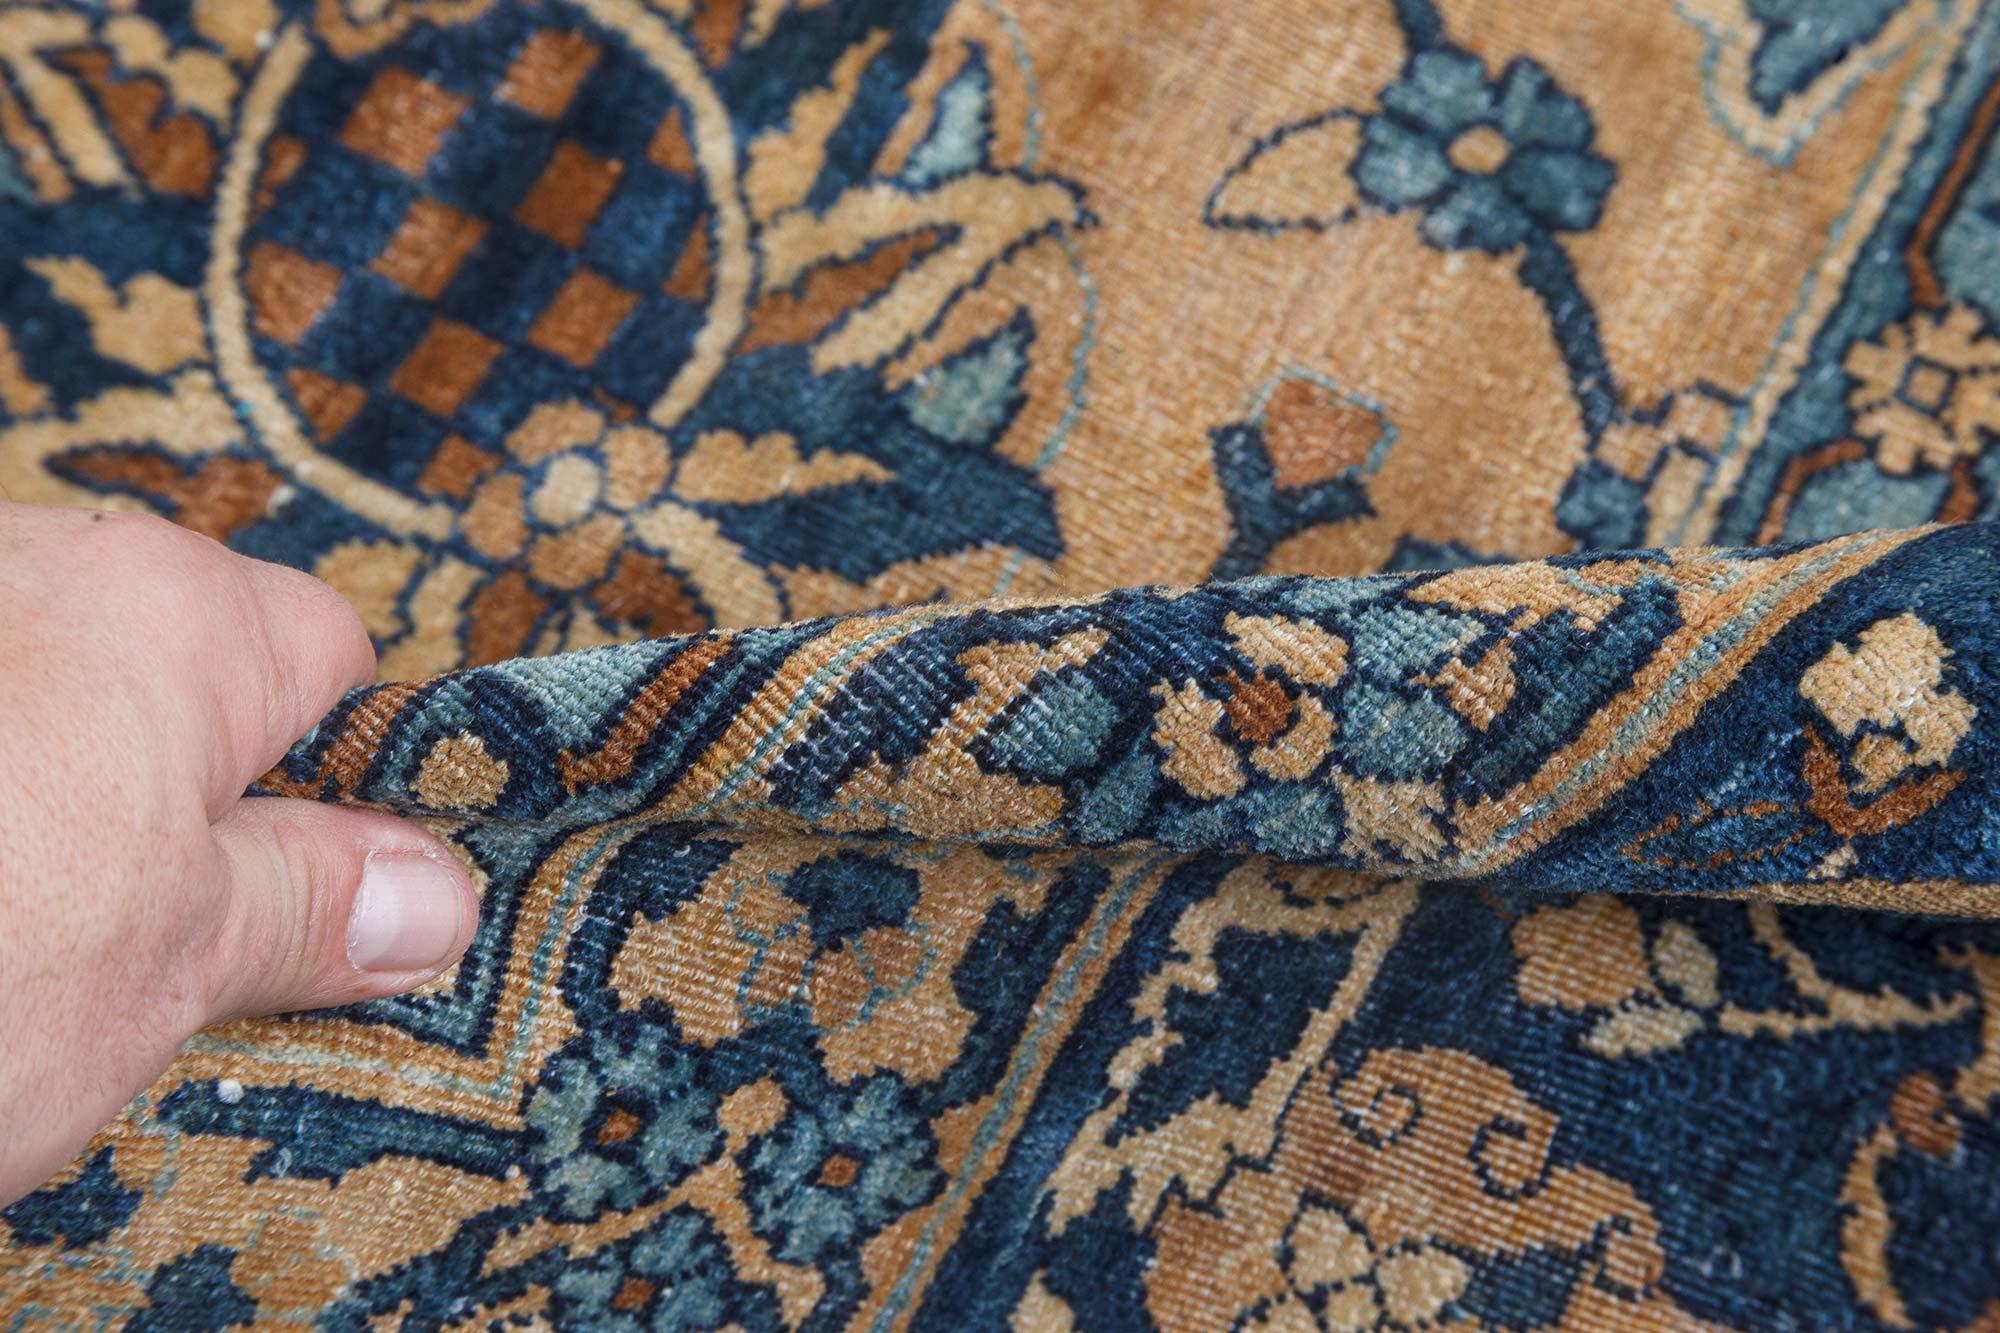 Antique Persian Kirman botanic handmade wool carpet
Size: 11'7